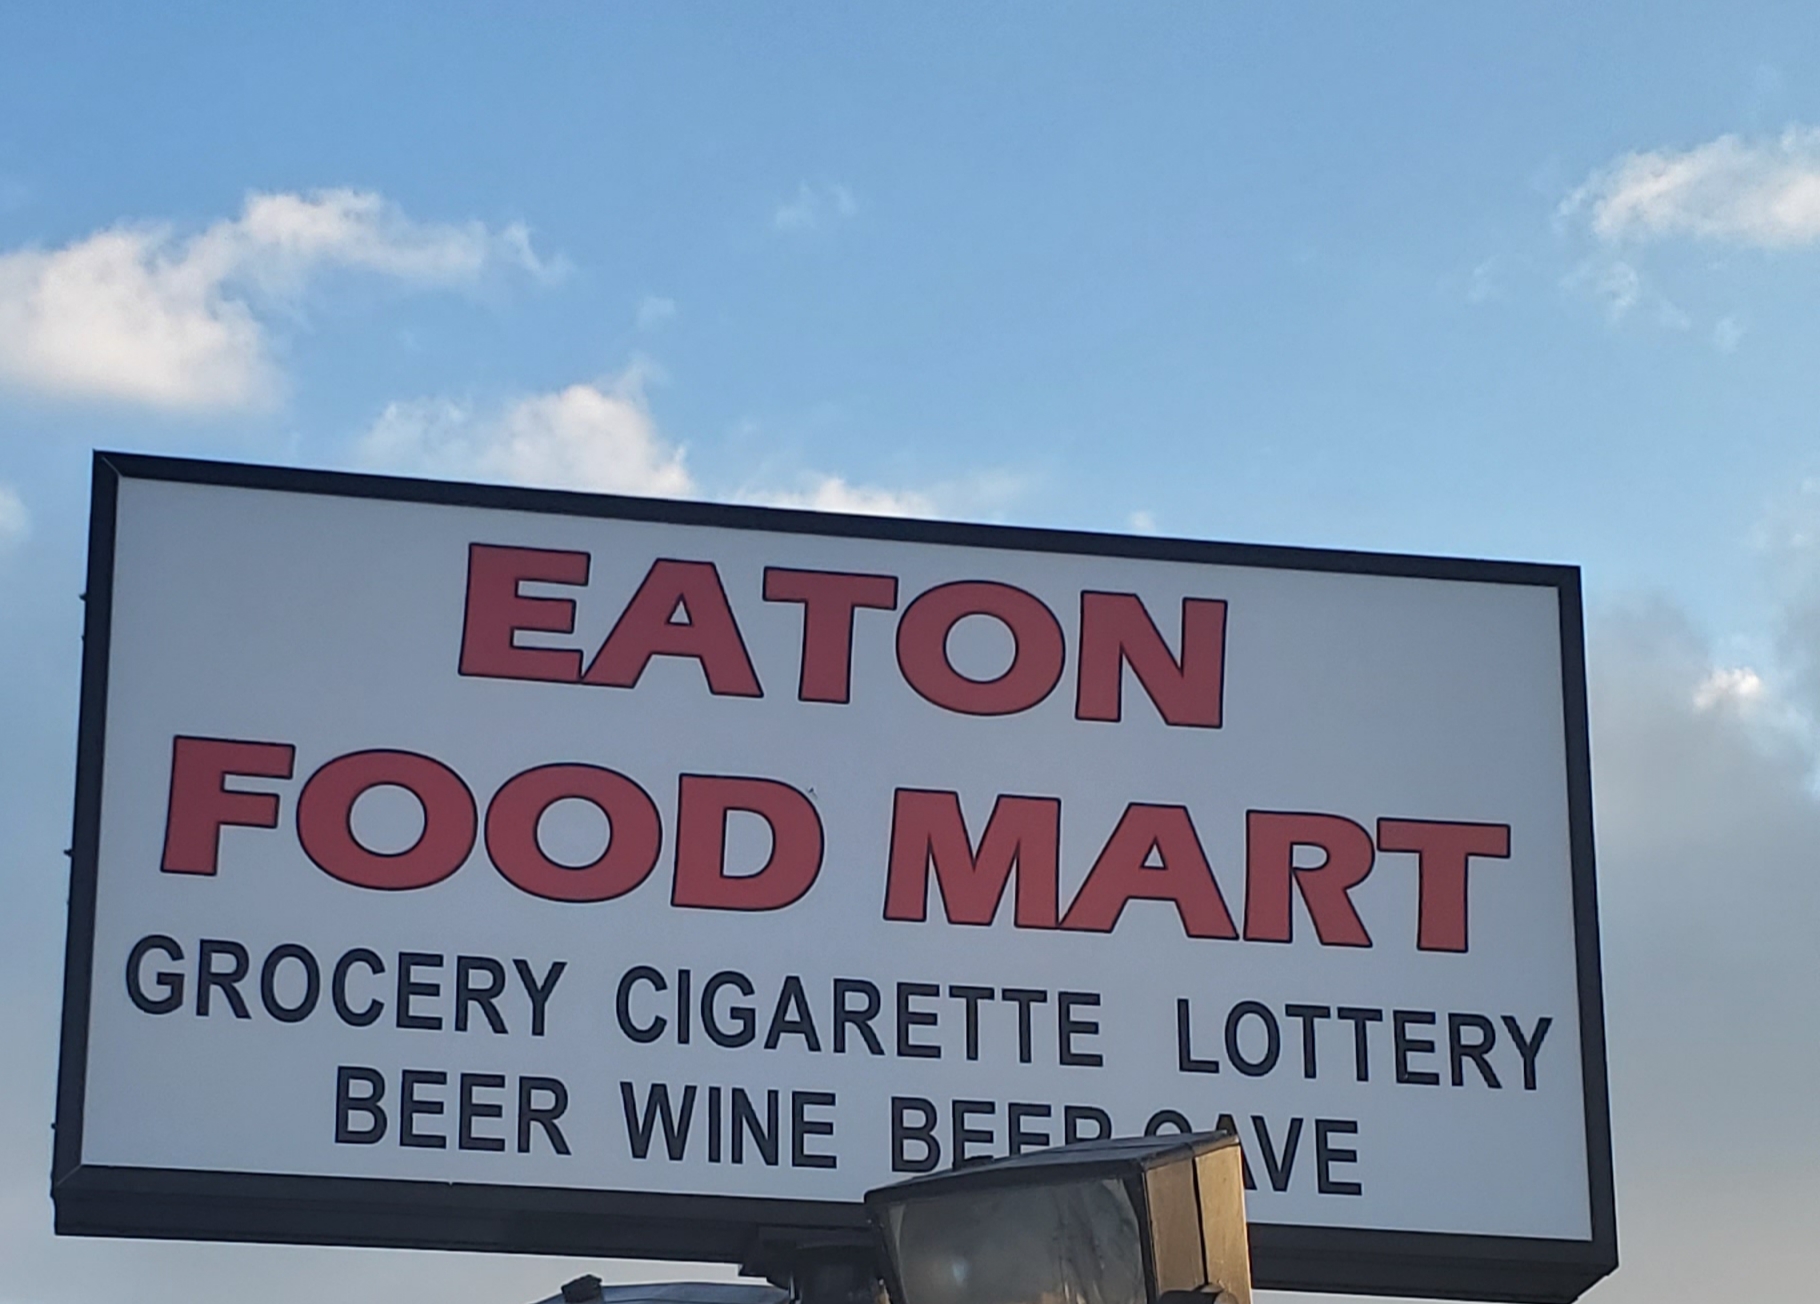 Eaton Food Mart